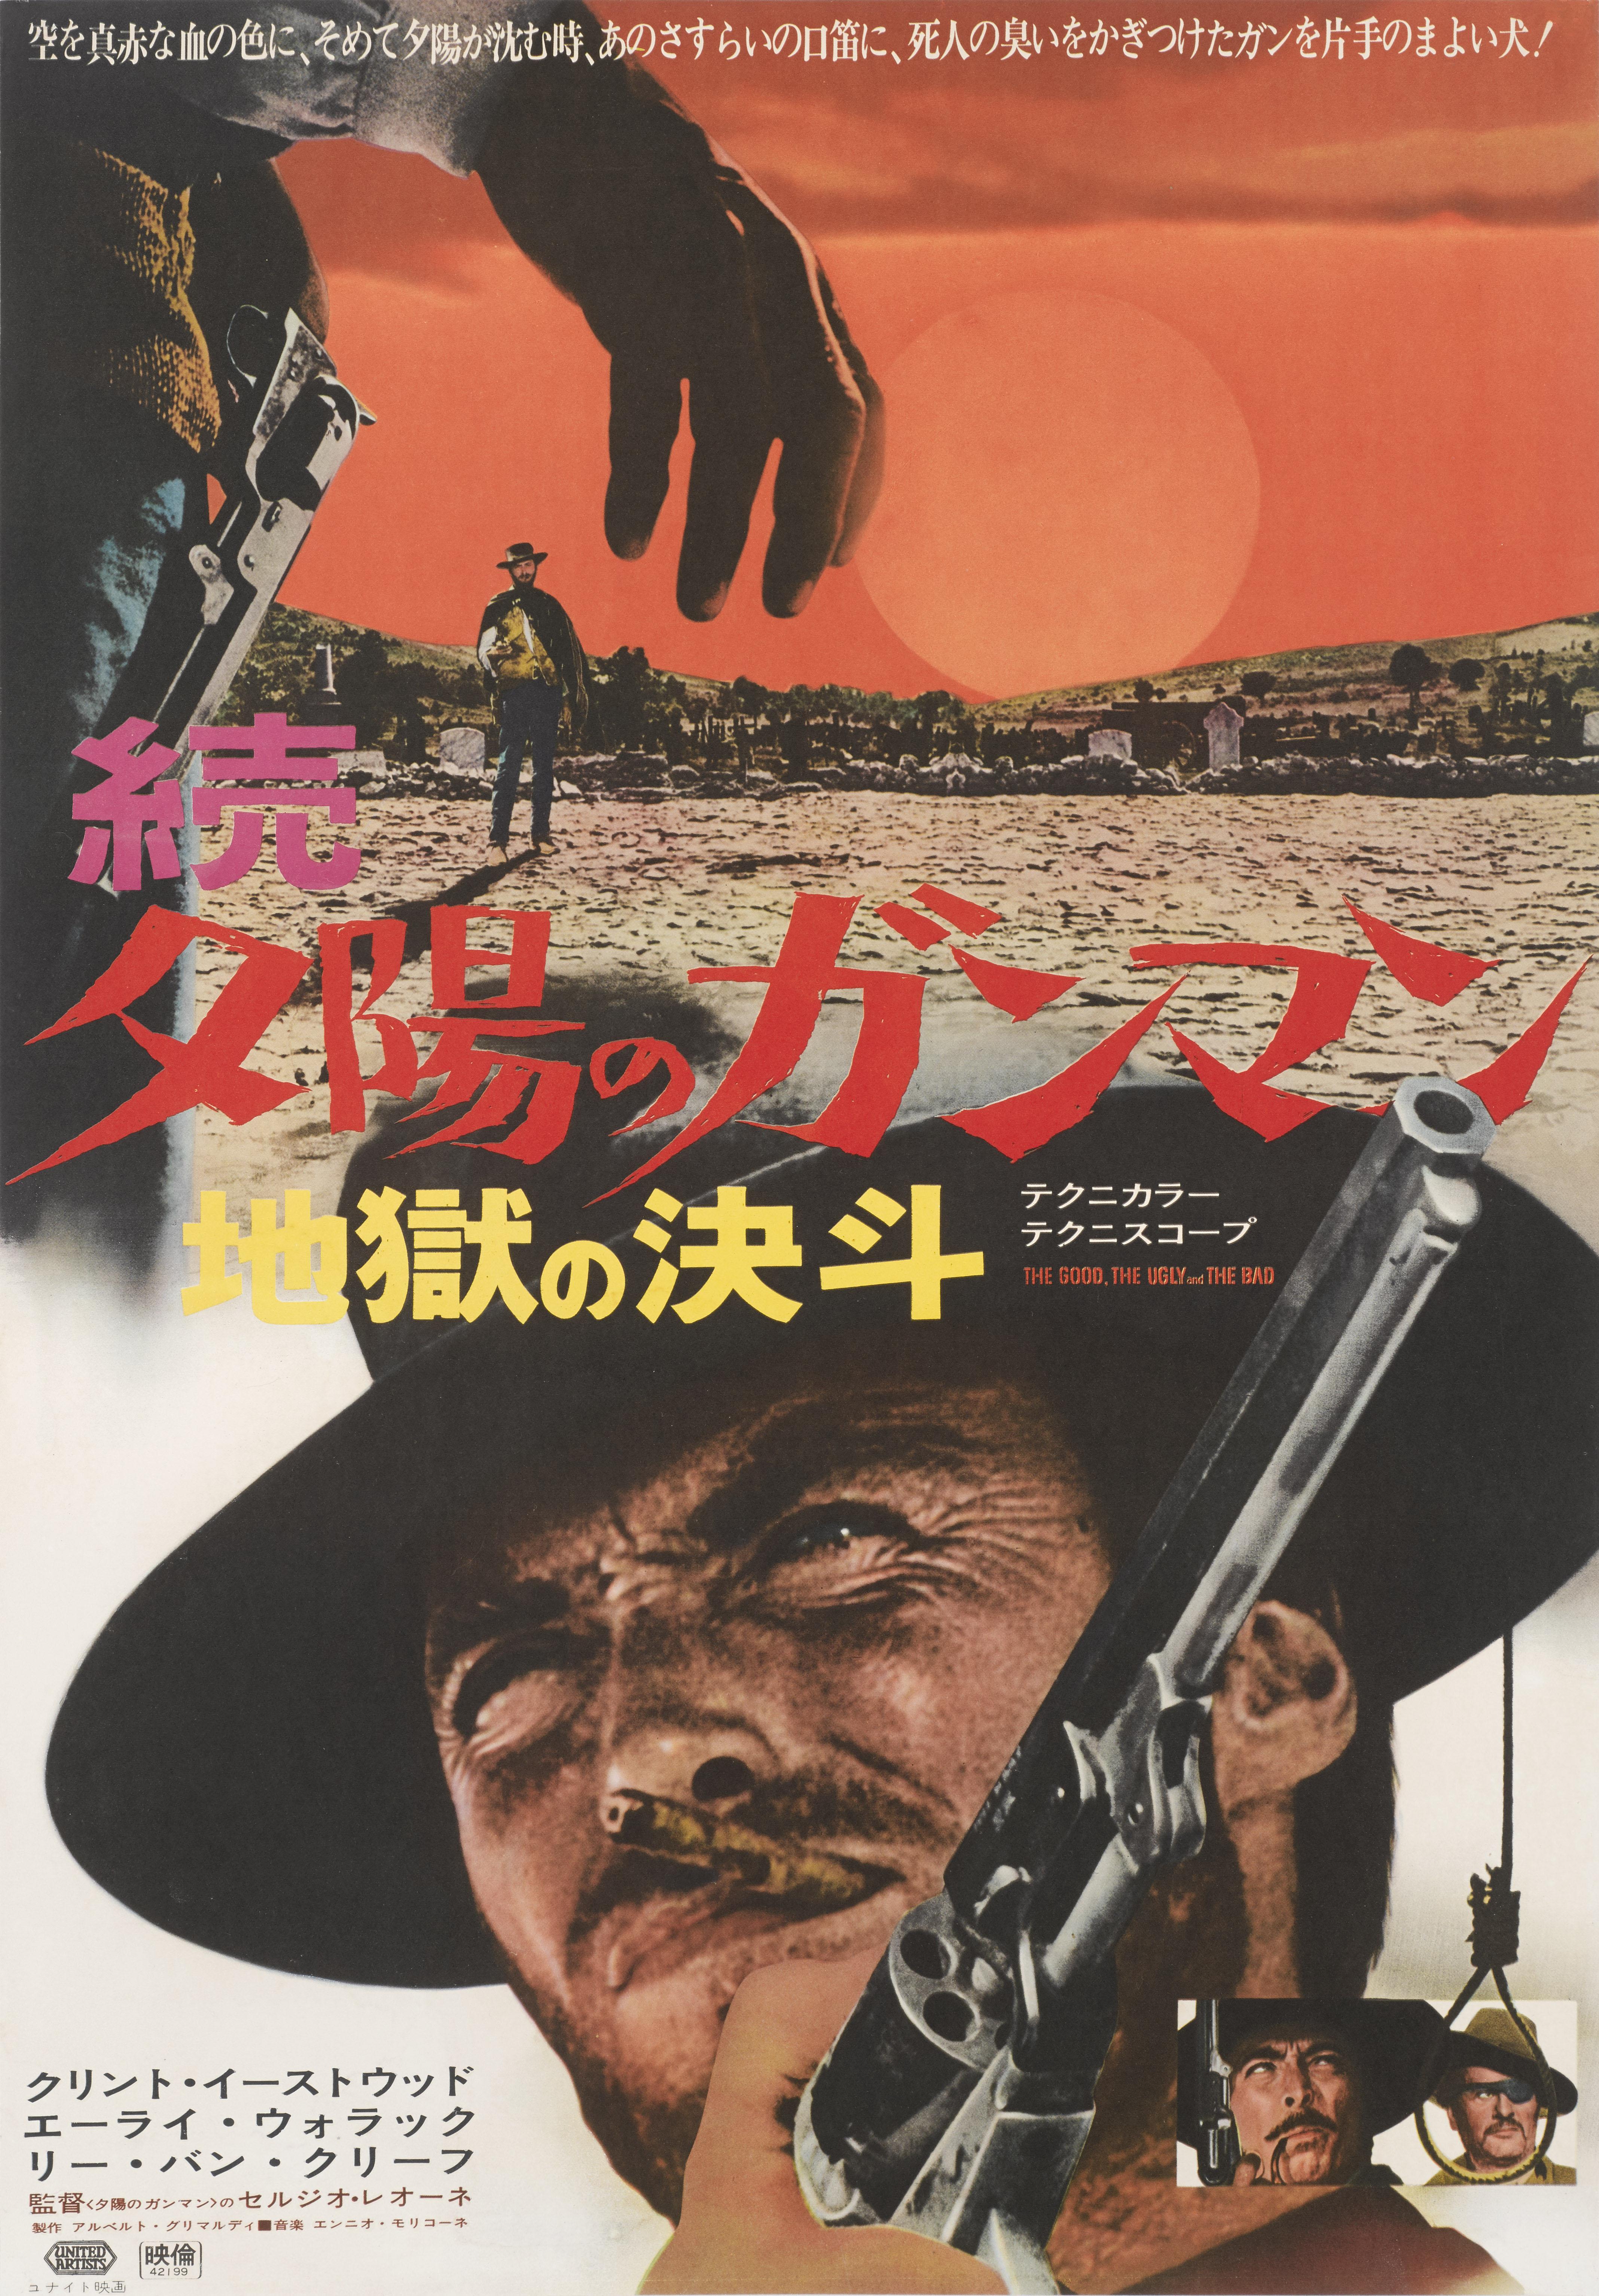 Original japanisches Filmplakat für den Spaghetti-Wrestling von 1966 mit Clint Eastwood, Eli Wallach und Lee Van Cleef in der Hauptrolle, Regie von Sergio Leone. Dieses coole Design wurde für die japanische Erstveröffentlichung des Films 1969